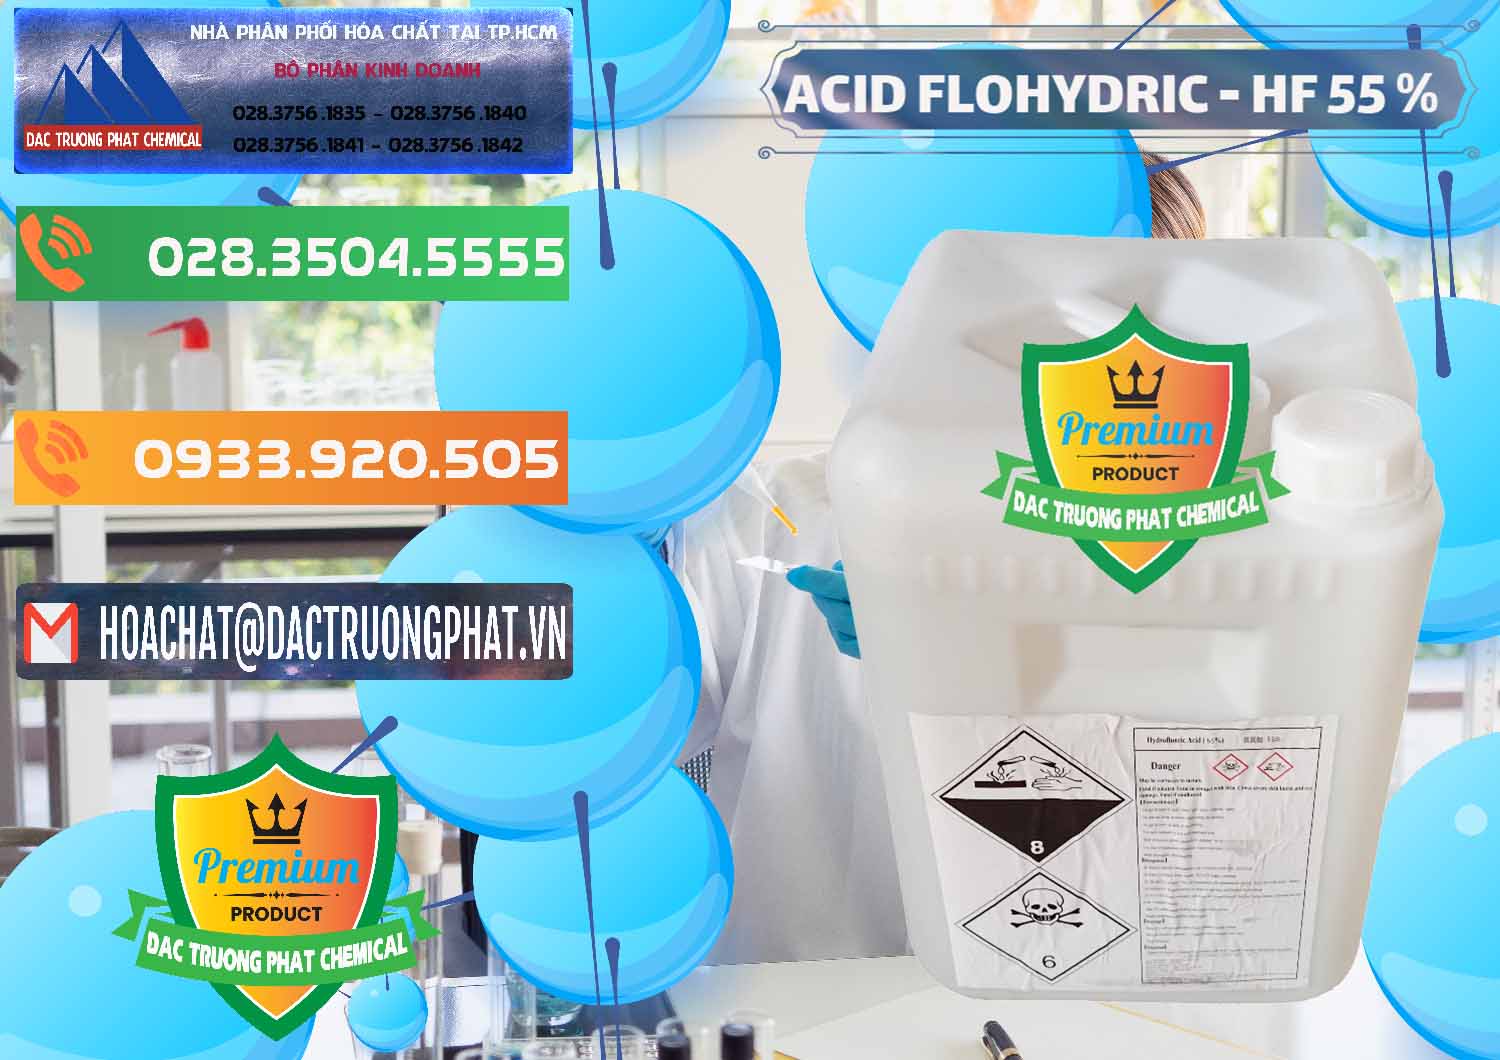 Cty kinh doanh ( bán ) Axit HF - Acid HF 55% Can Trắng Trung Quốc China - 0079 - Đơn vị chuyên bán ( cung cấp ) hóa chất tại TP.HCM - hoachatxulynuoc.com.vn